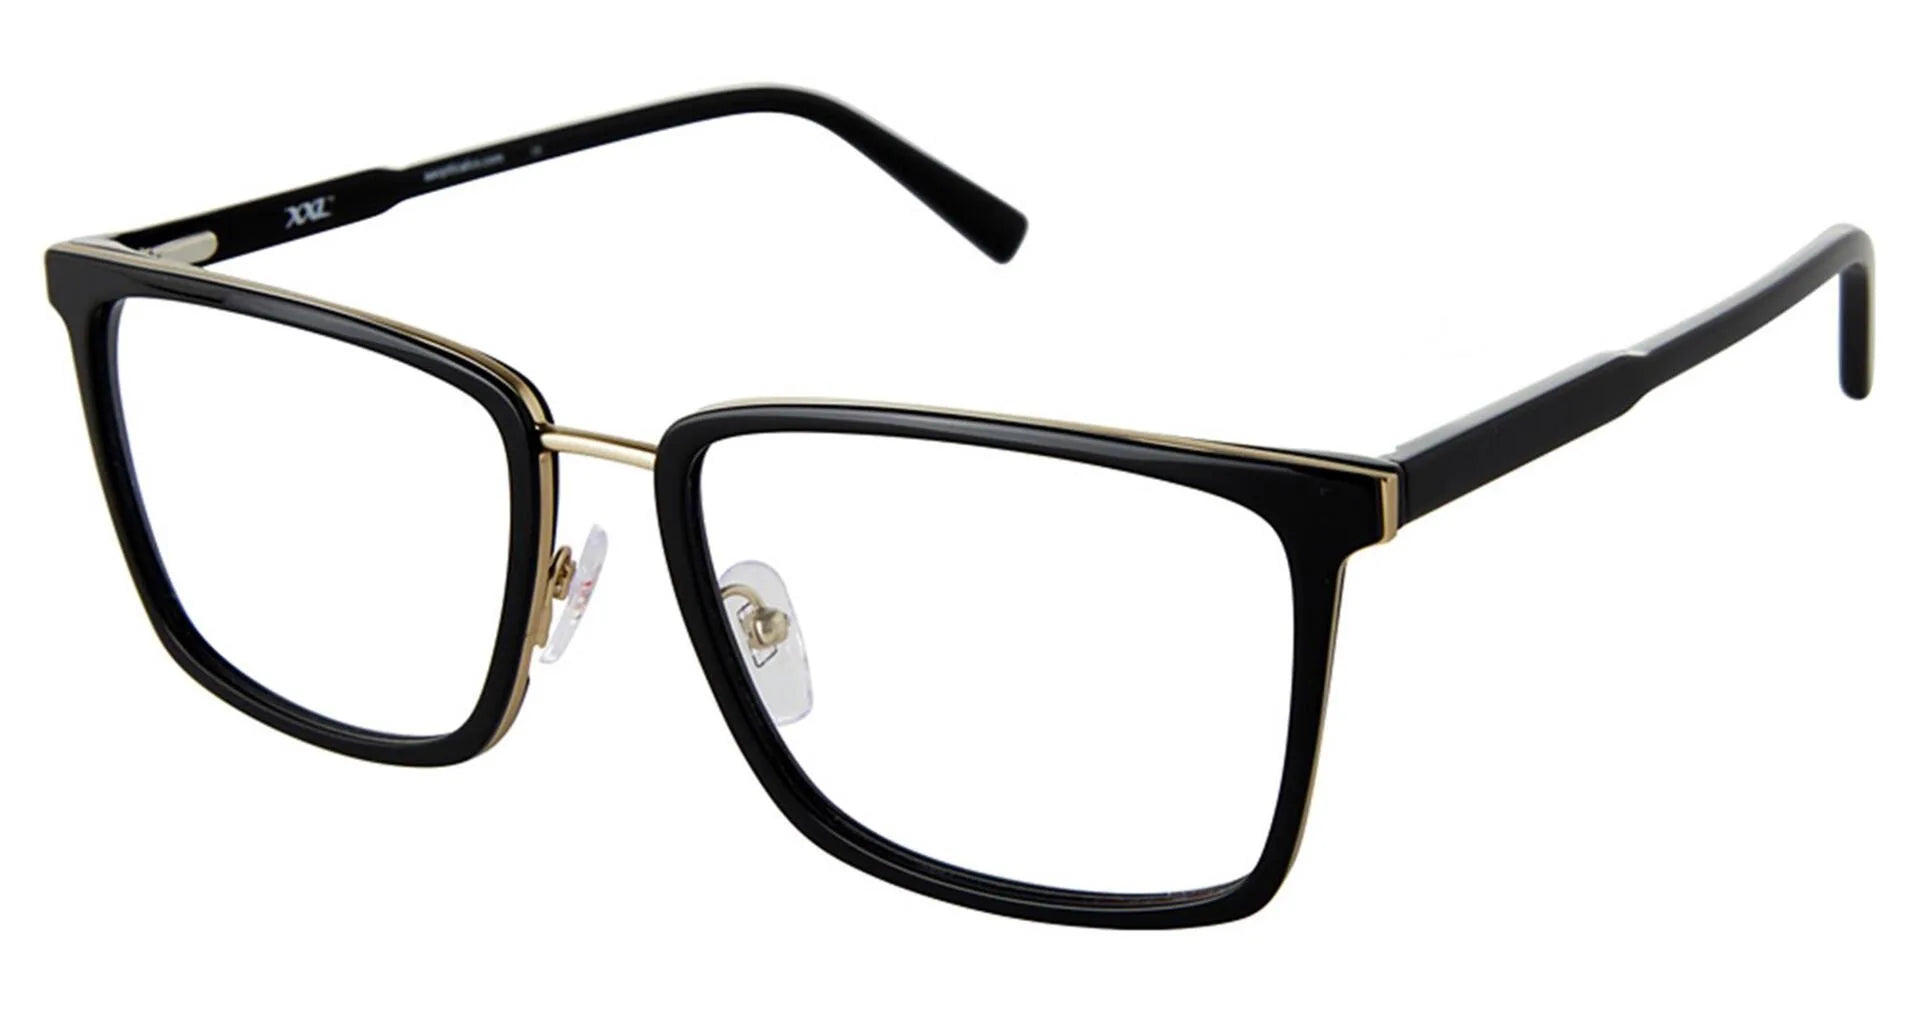 XXL Eyewear Palomino Eyeglasses Black